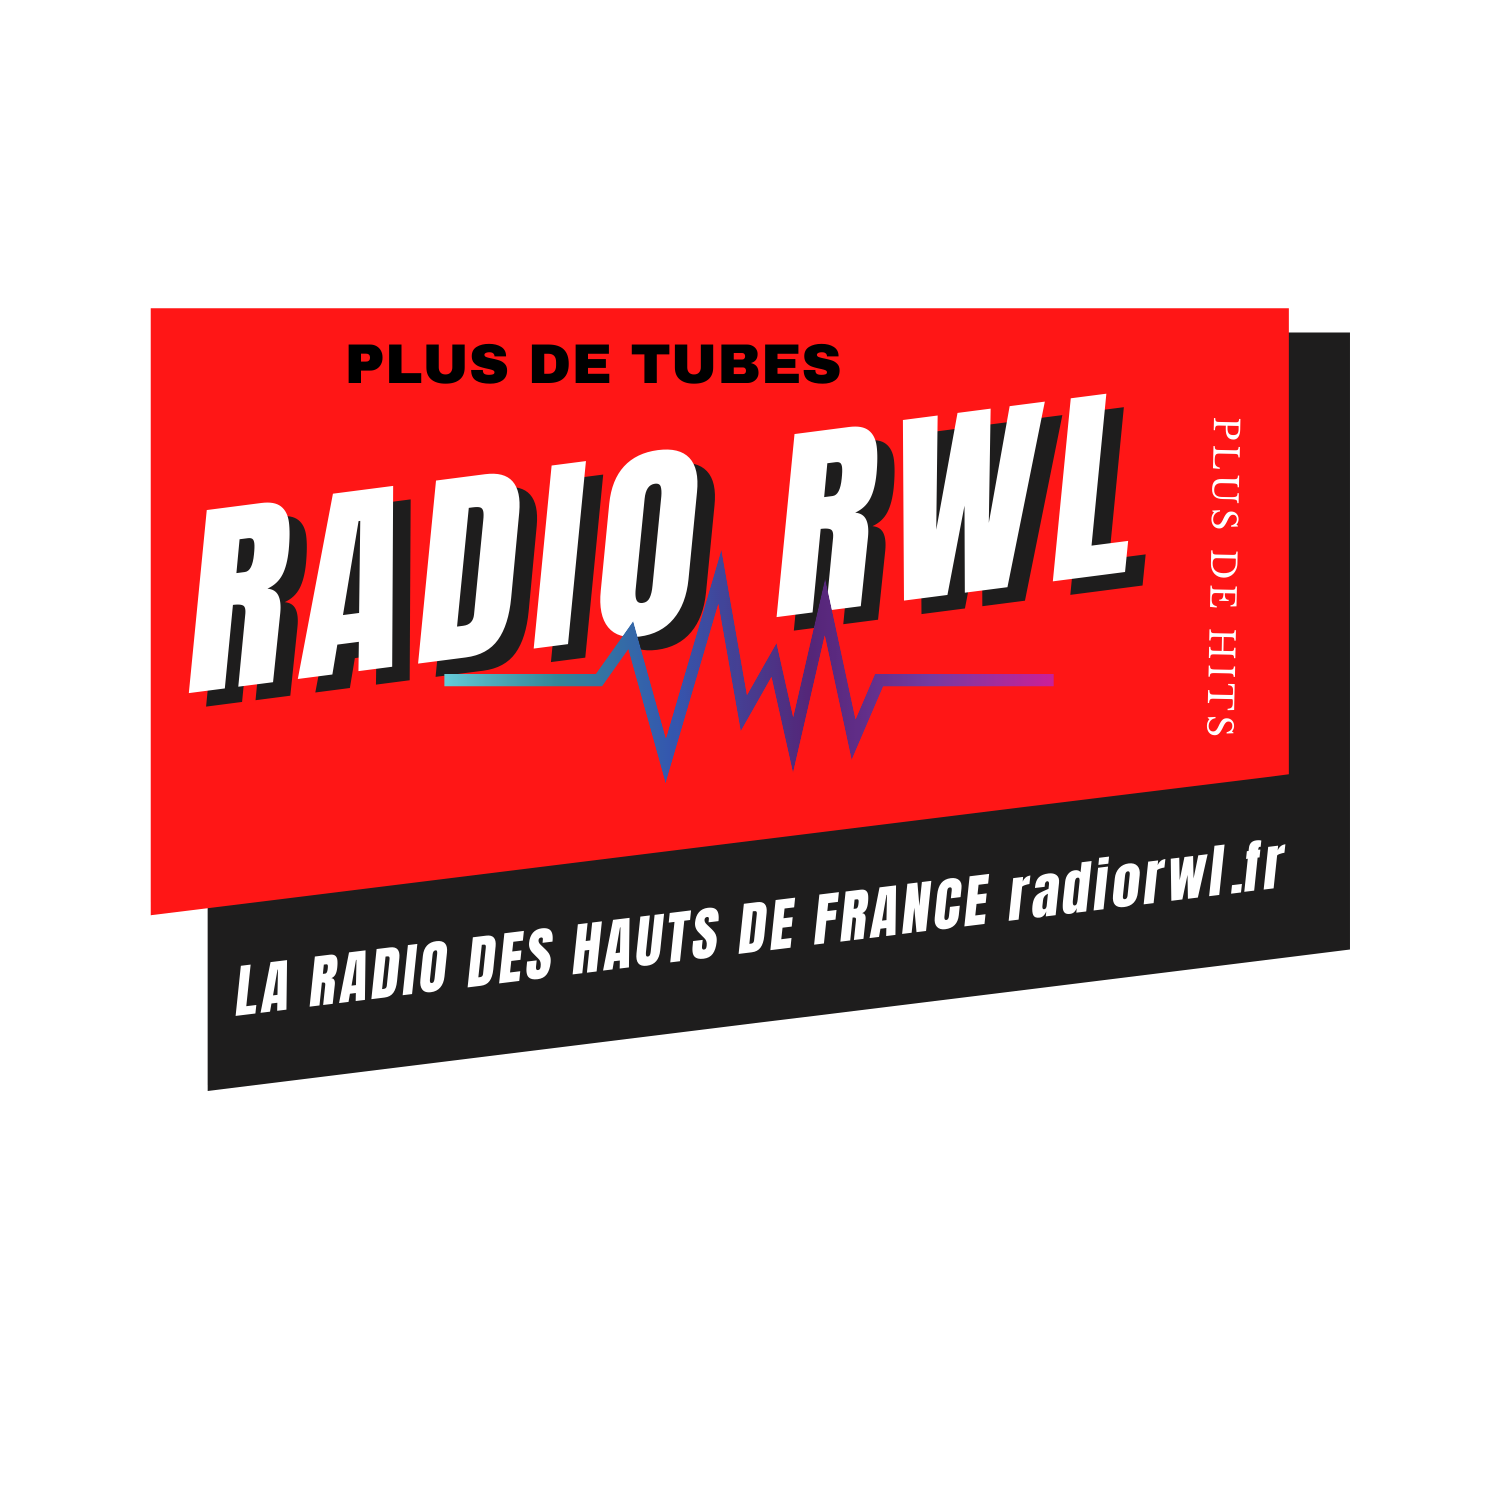 RADIO RWL "LA RADIO DES HAUTS DE FRANCE"